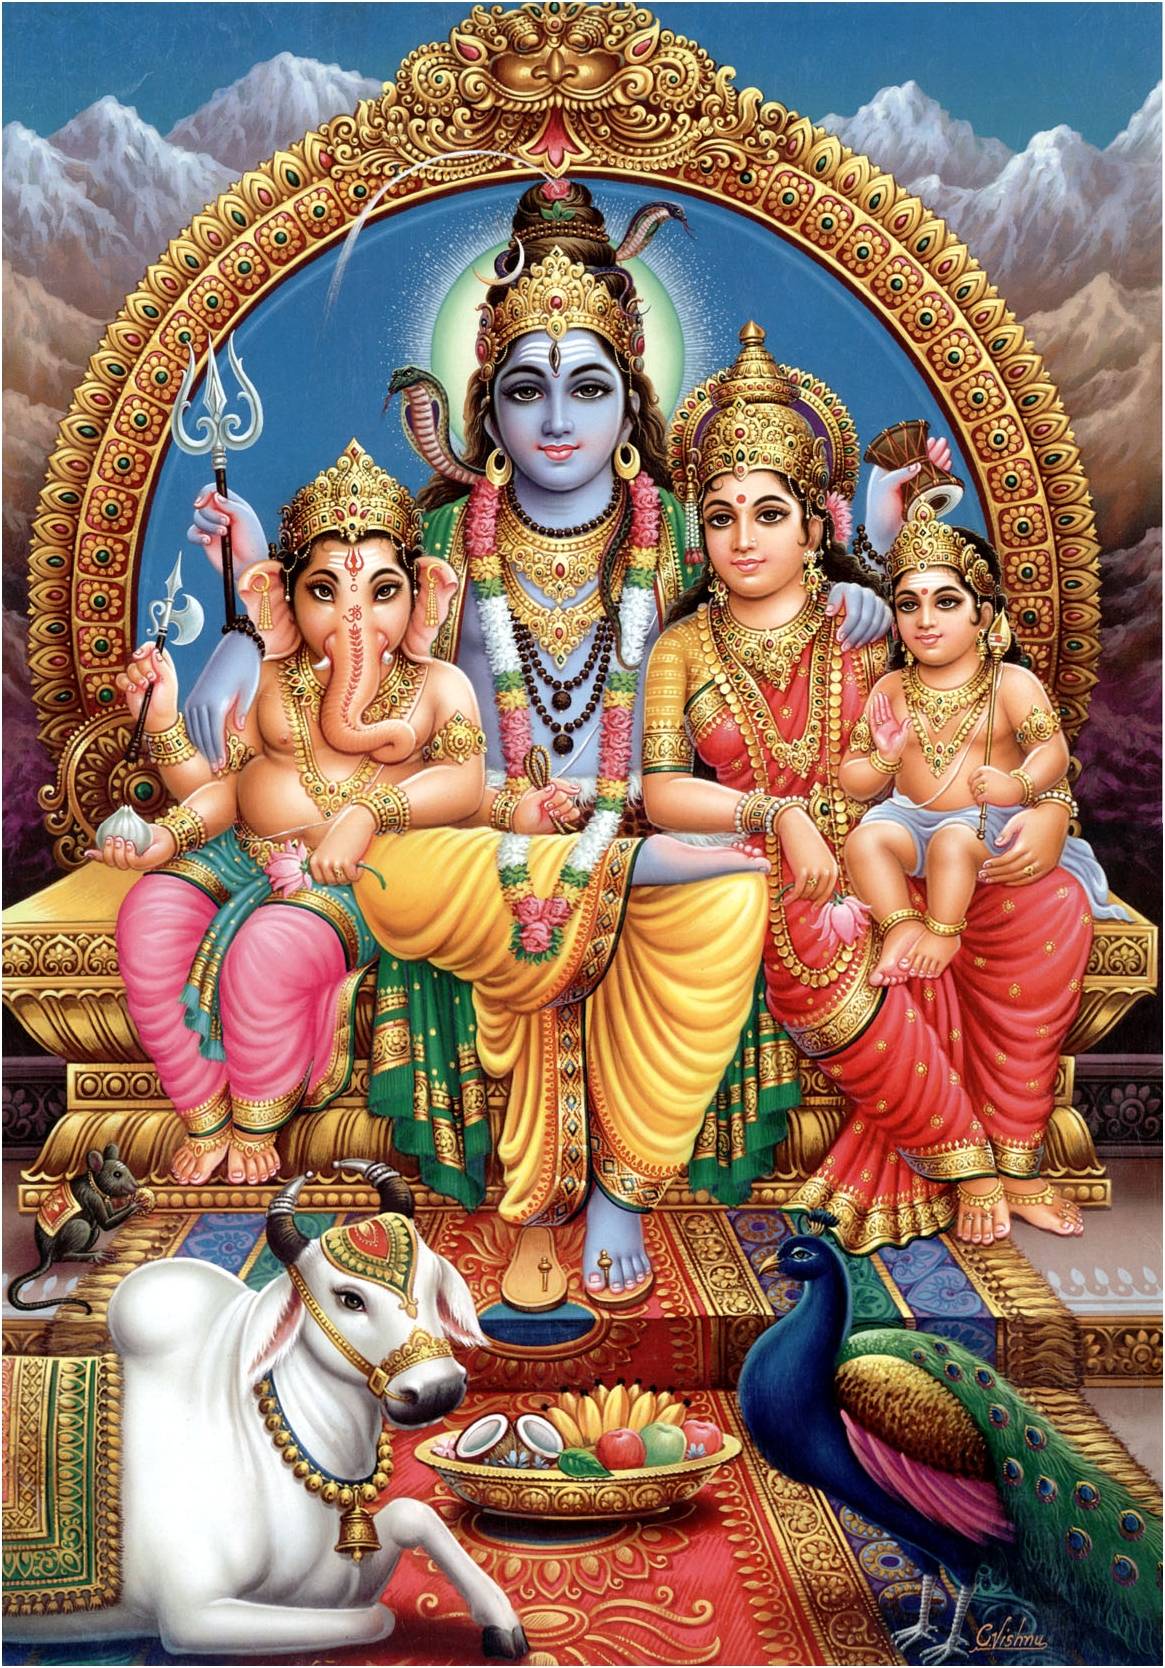 Шива - история божества в индуизме, облики, образ и характер - 24сми